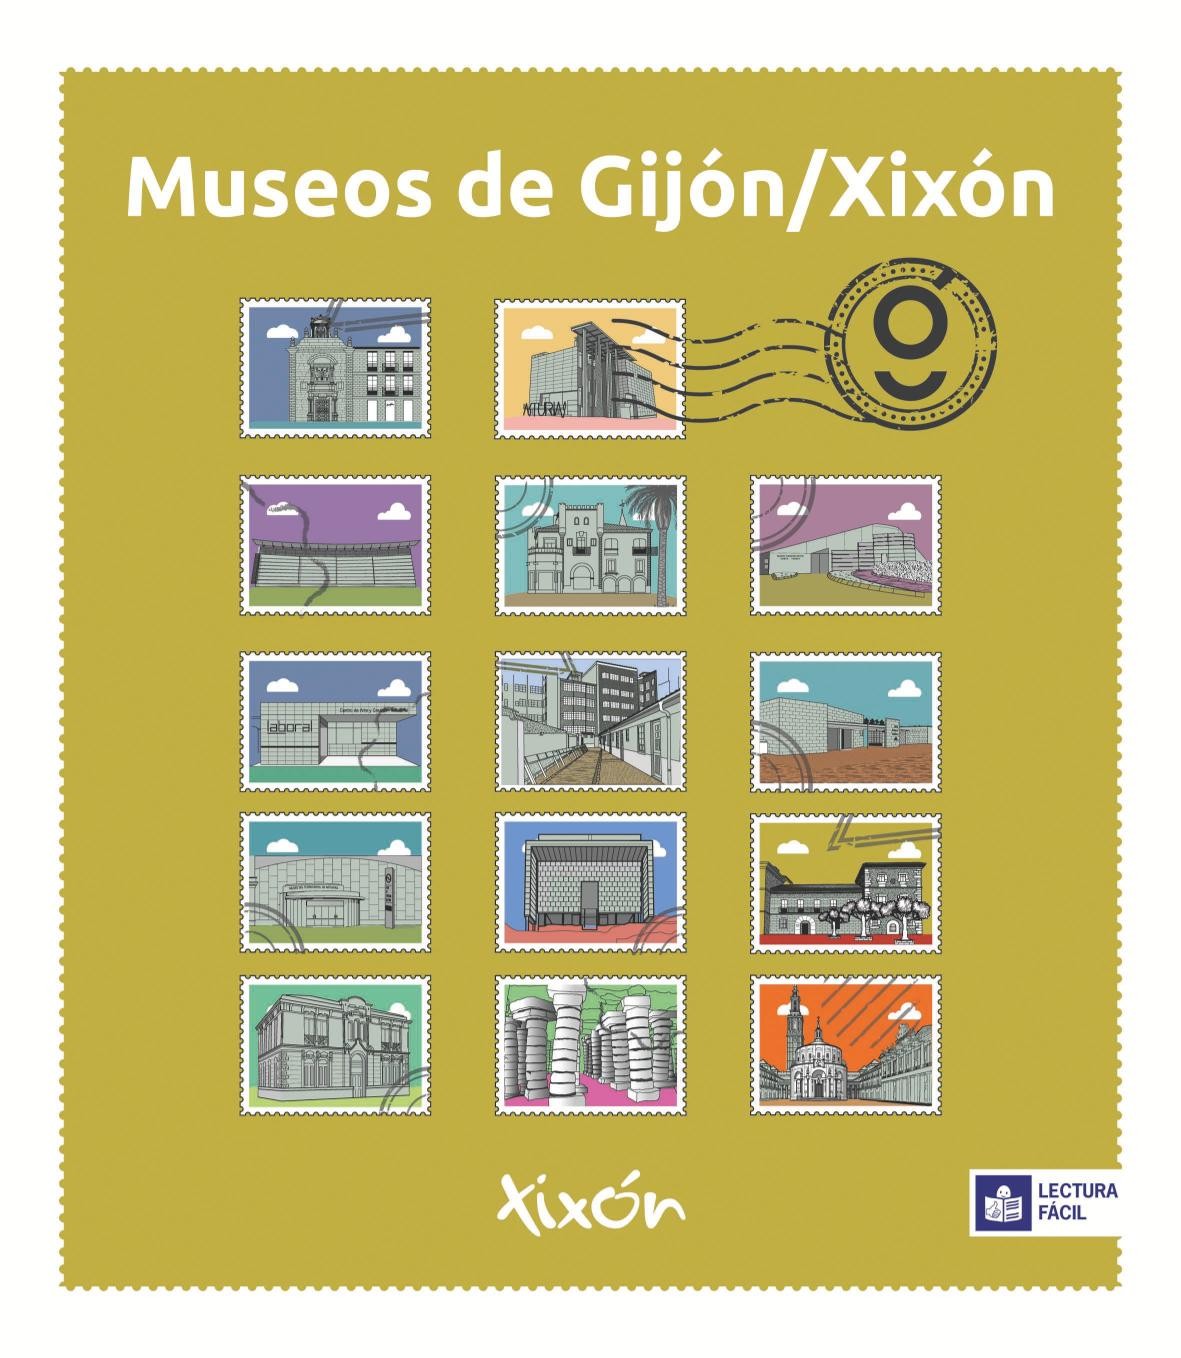 Información en lectura fácil de Laboral Centro de Arte y Creación Industrial en Visita Gijón Profesional